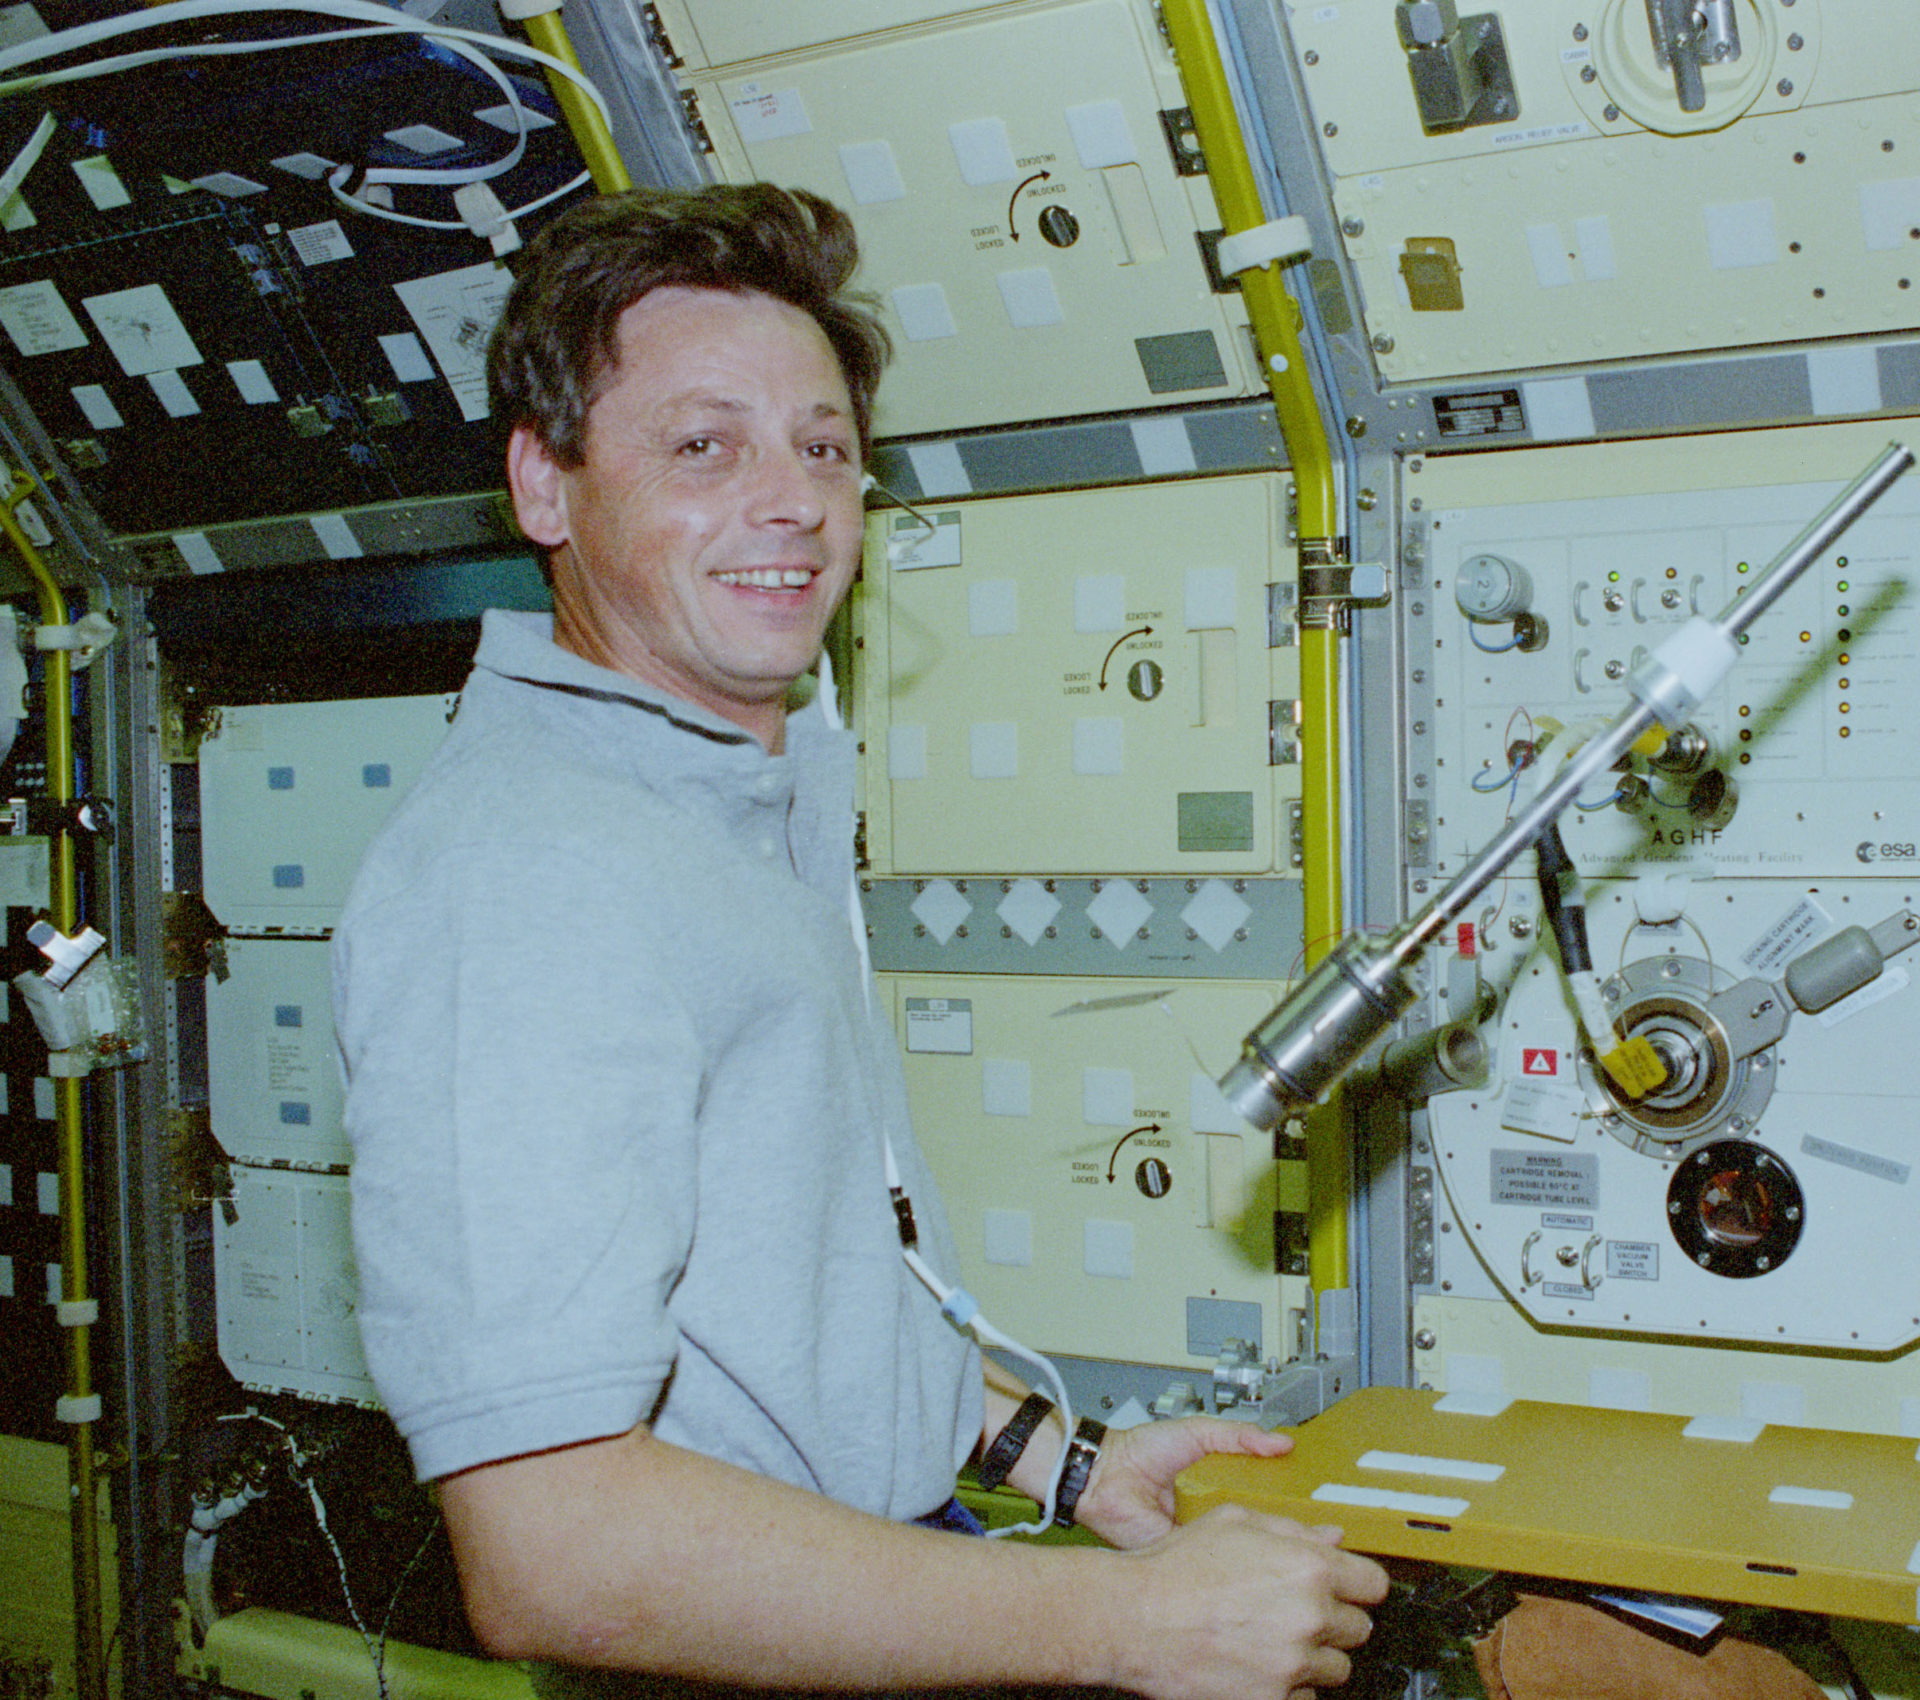 Jean-Jacques Favier lors de la mission STS-78 en 1996